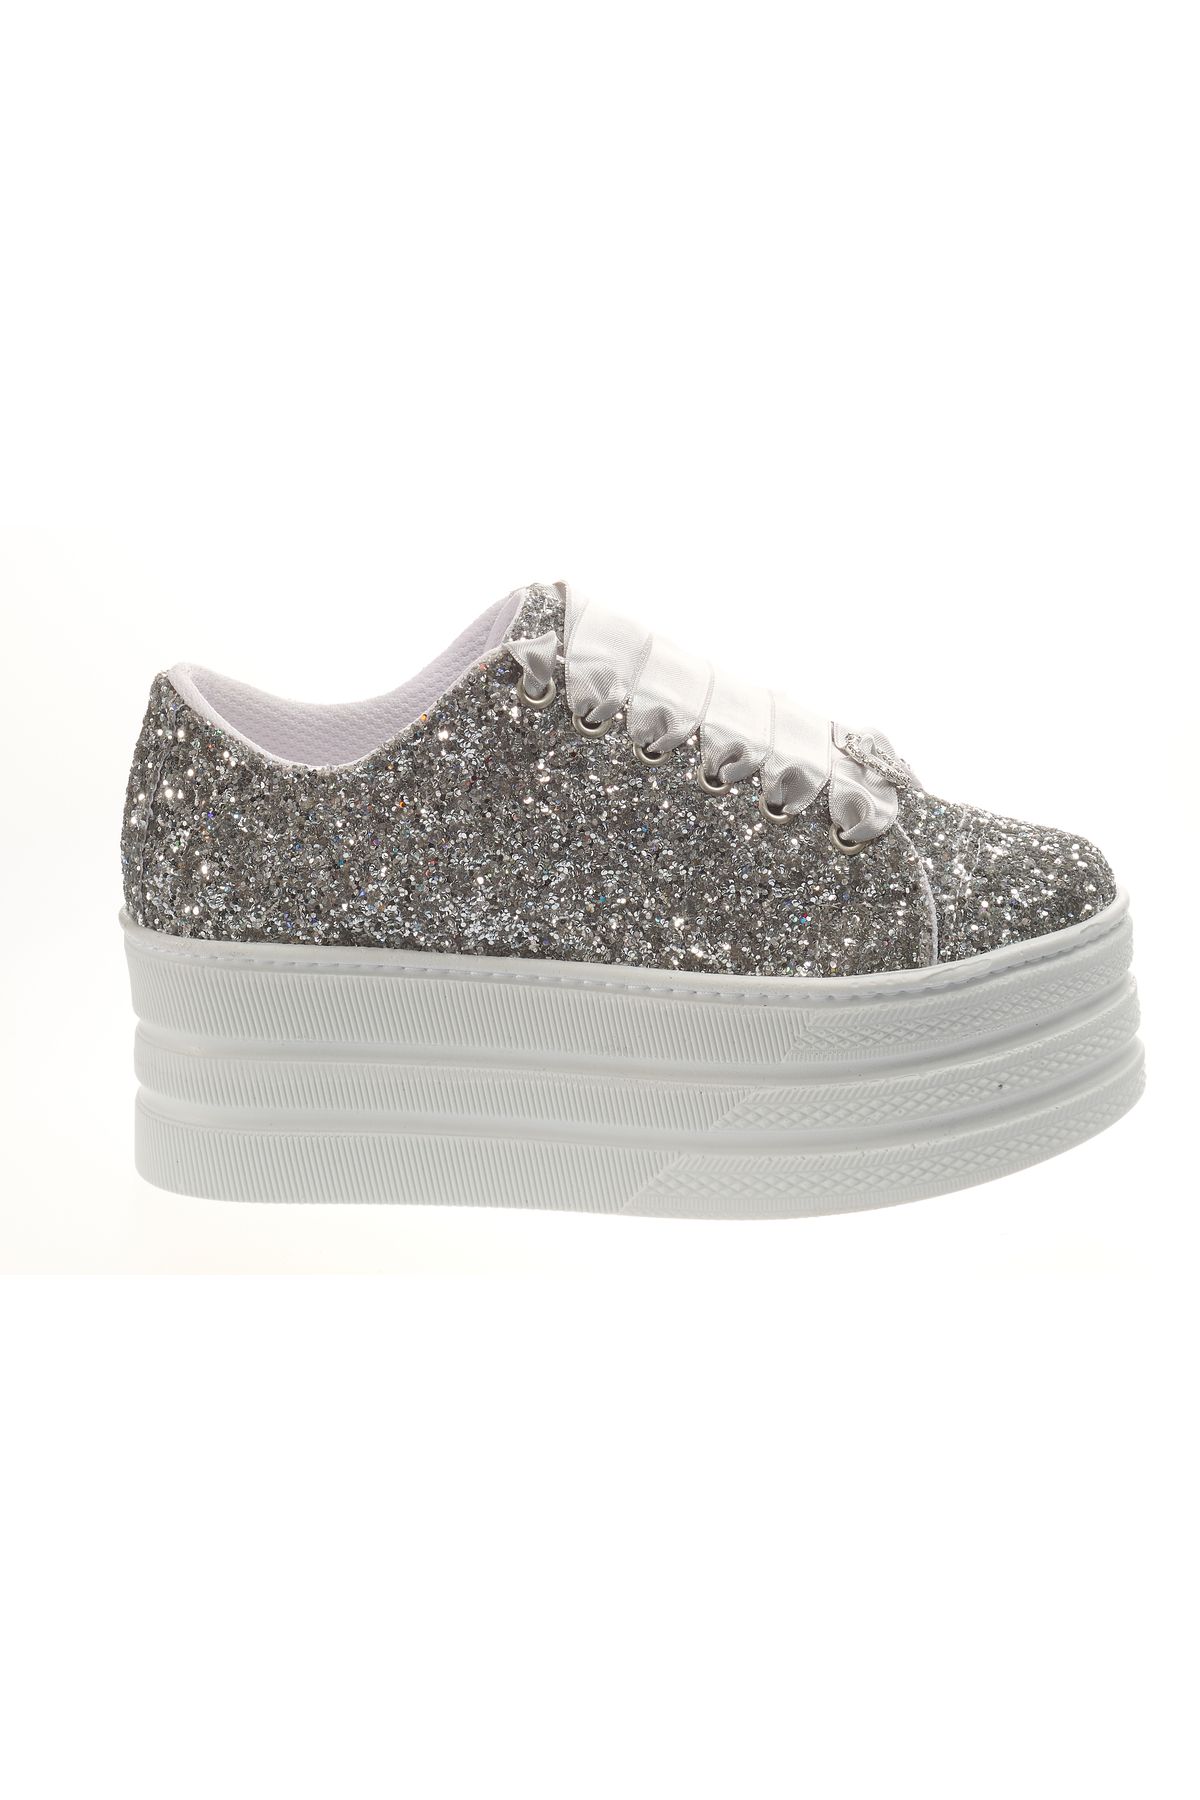 Ayakkabı Tutkusu Stilo ® Gümüş Prıltılılı Spor Ayakkabı Düz Platform Yükseklik Şık ve Rahat Kadın Ayakkabı